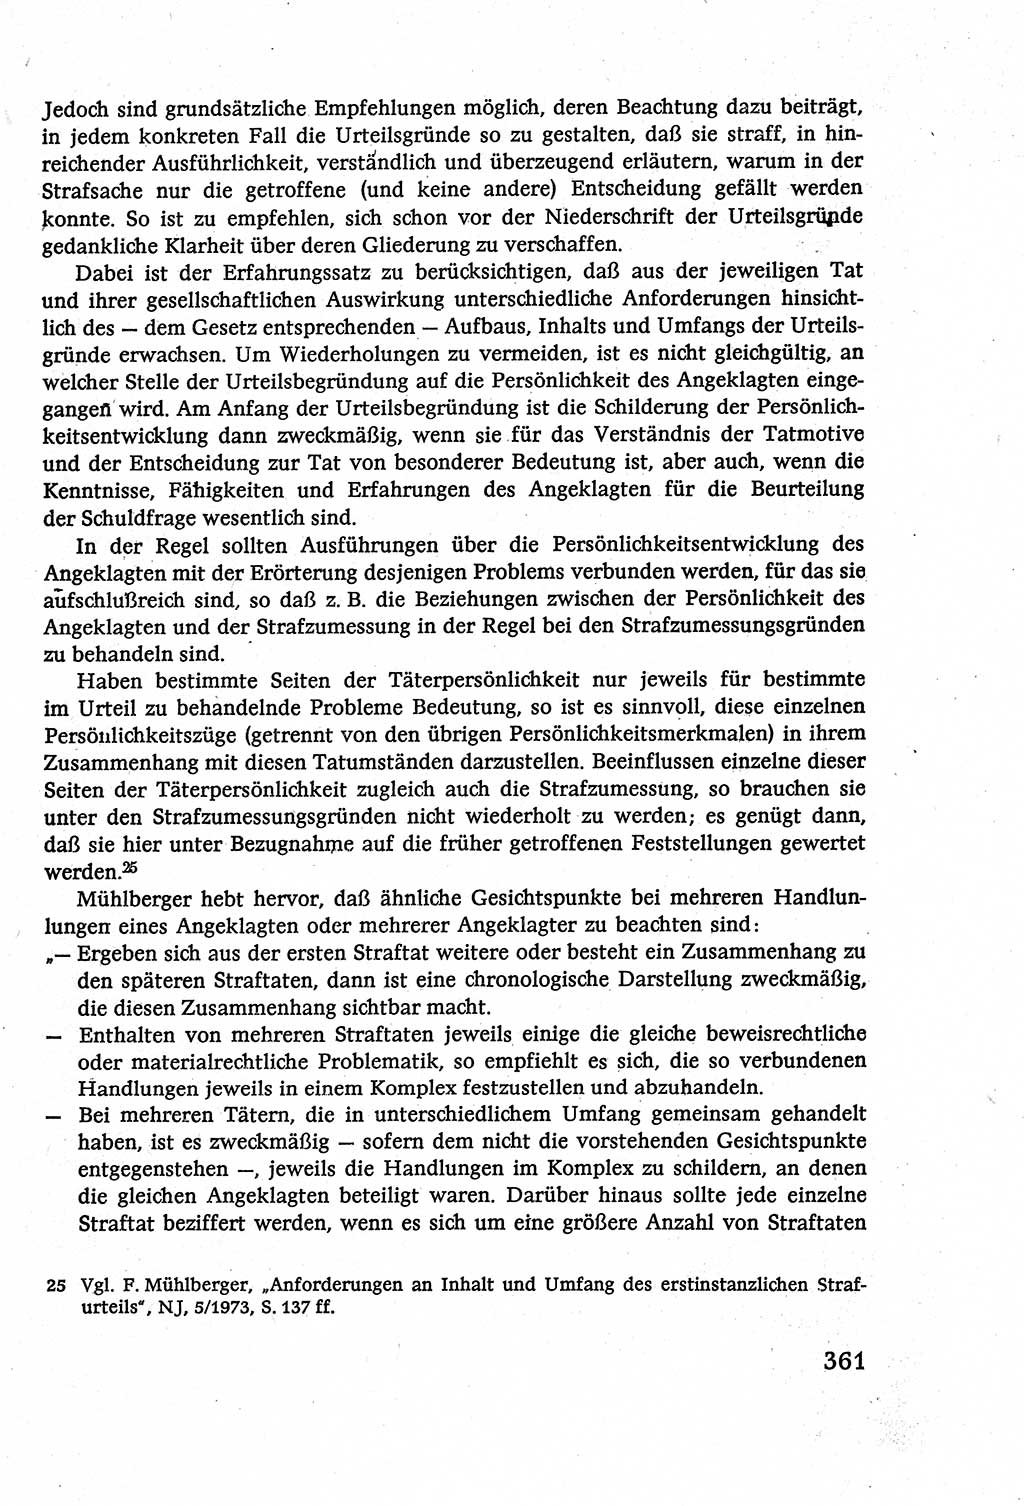 Strafverfahrensrecht [Deutsche Demokratische Republik (DDR)], Lehrbuch 1977, Seite 361 (Strafverf.-R. DDR Lb. 1977, S. 361)